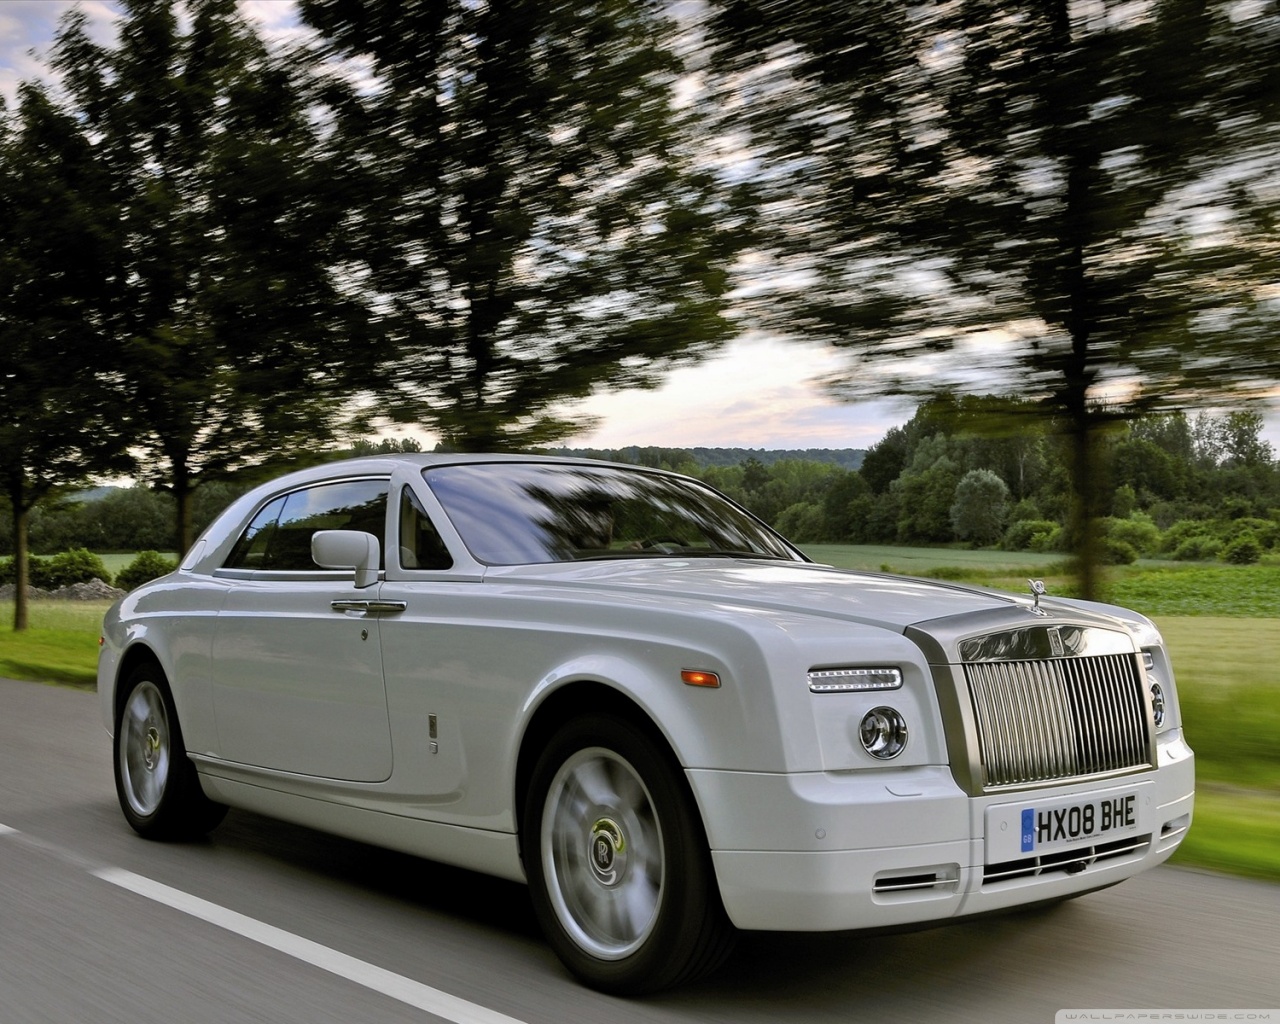 Download Rolls Royce Super Car wallpaper